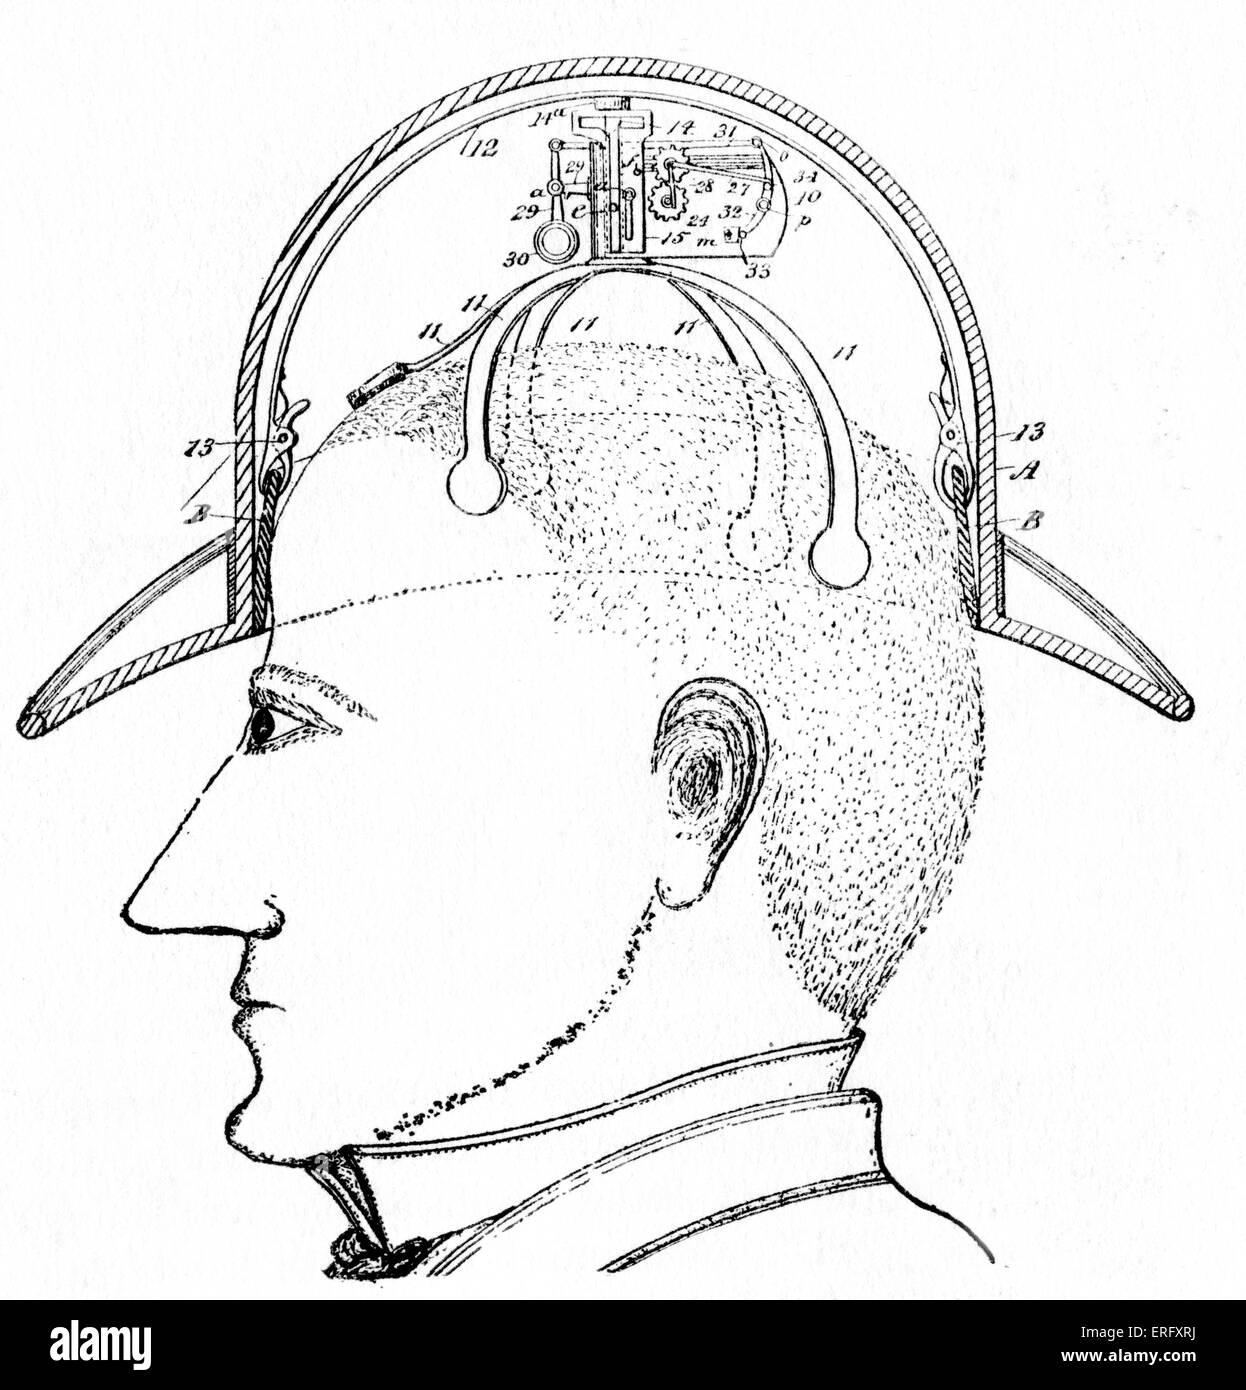 Diseño del siglo XIX para un commuter 's hat. El sombrero eleva y gira sobre la cabeza, permitiendo al usuario hacer educado Foto de stock